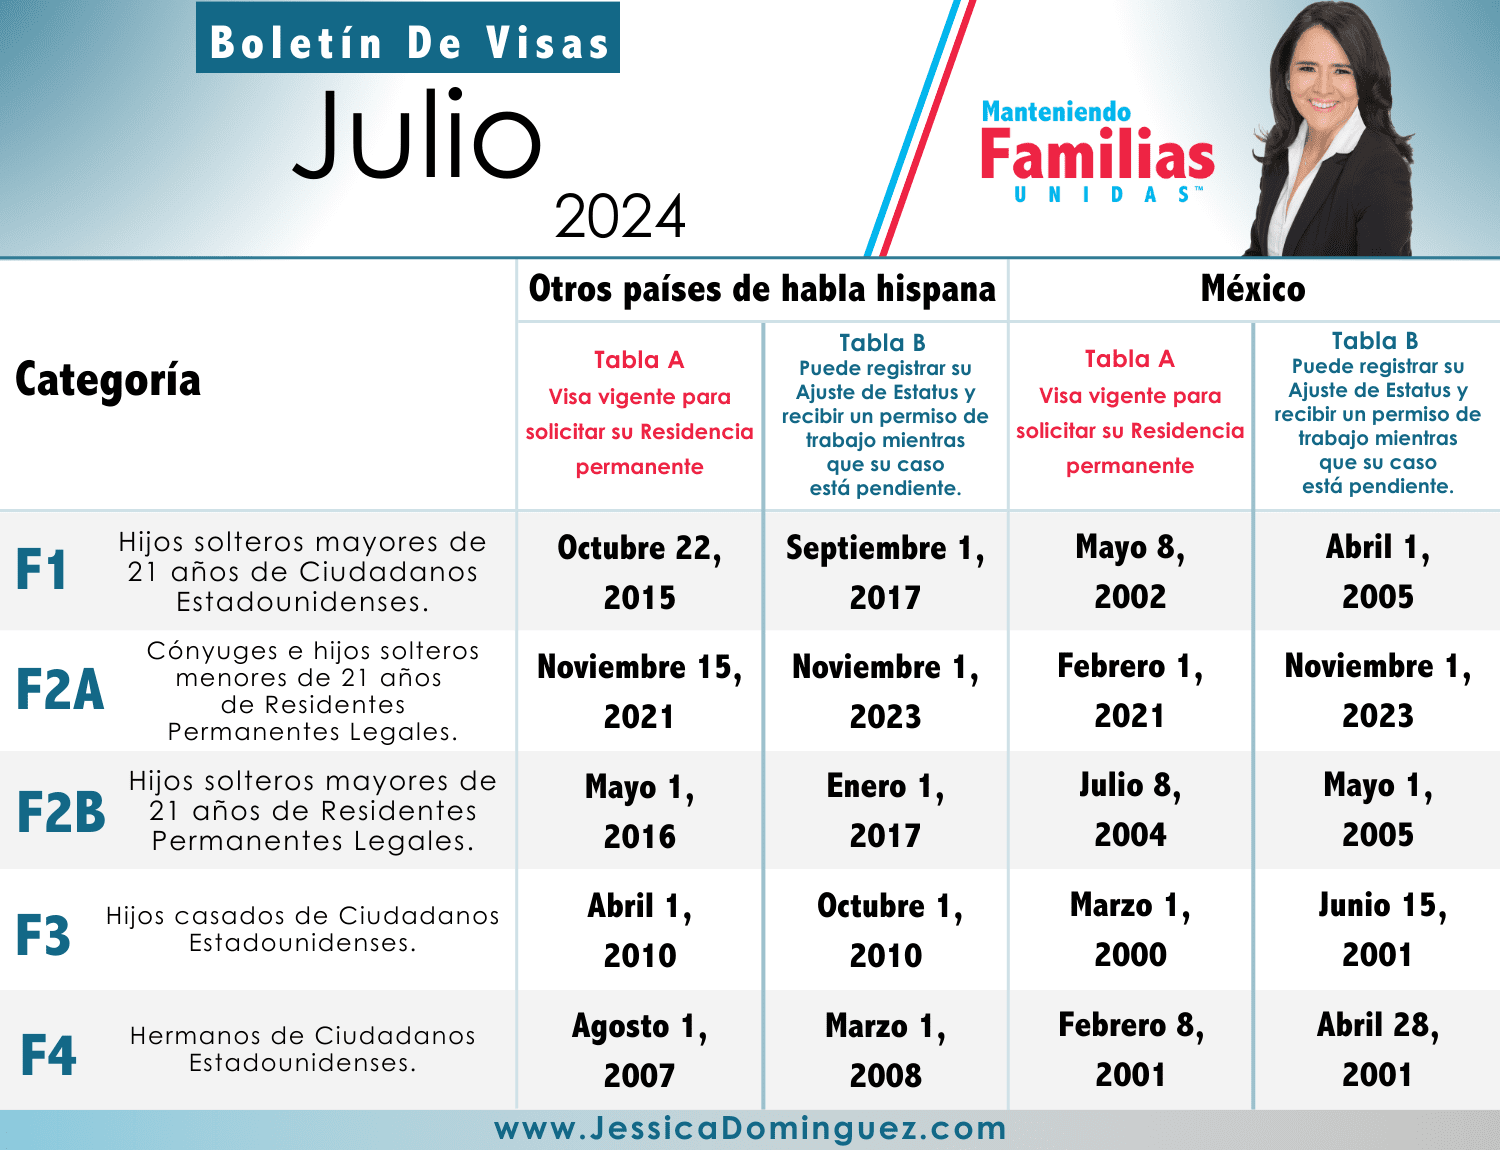 Boletín de Visas Julio 2024